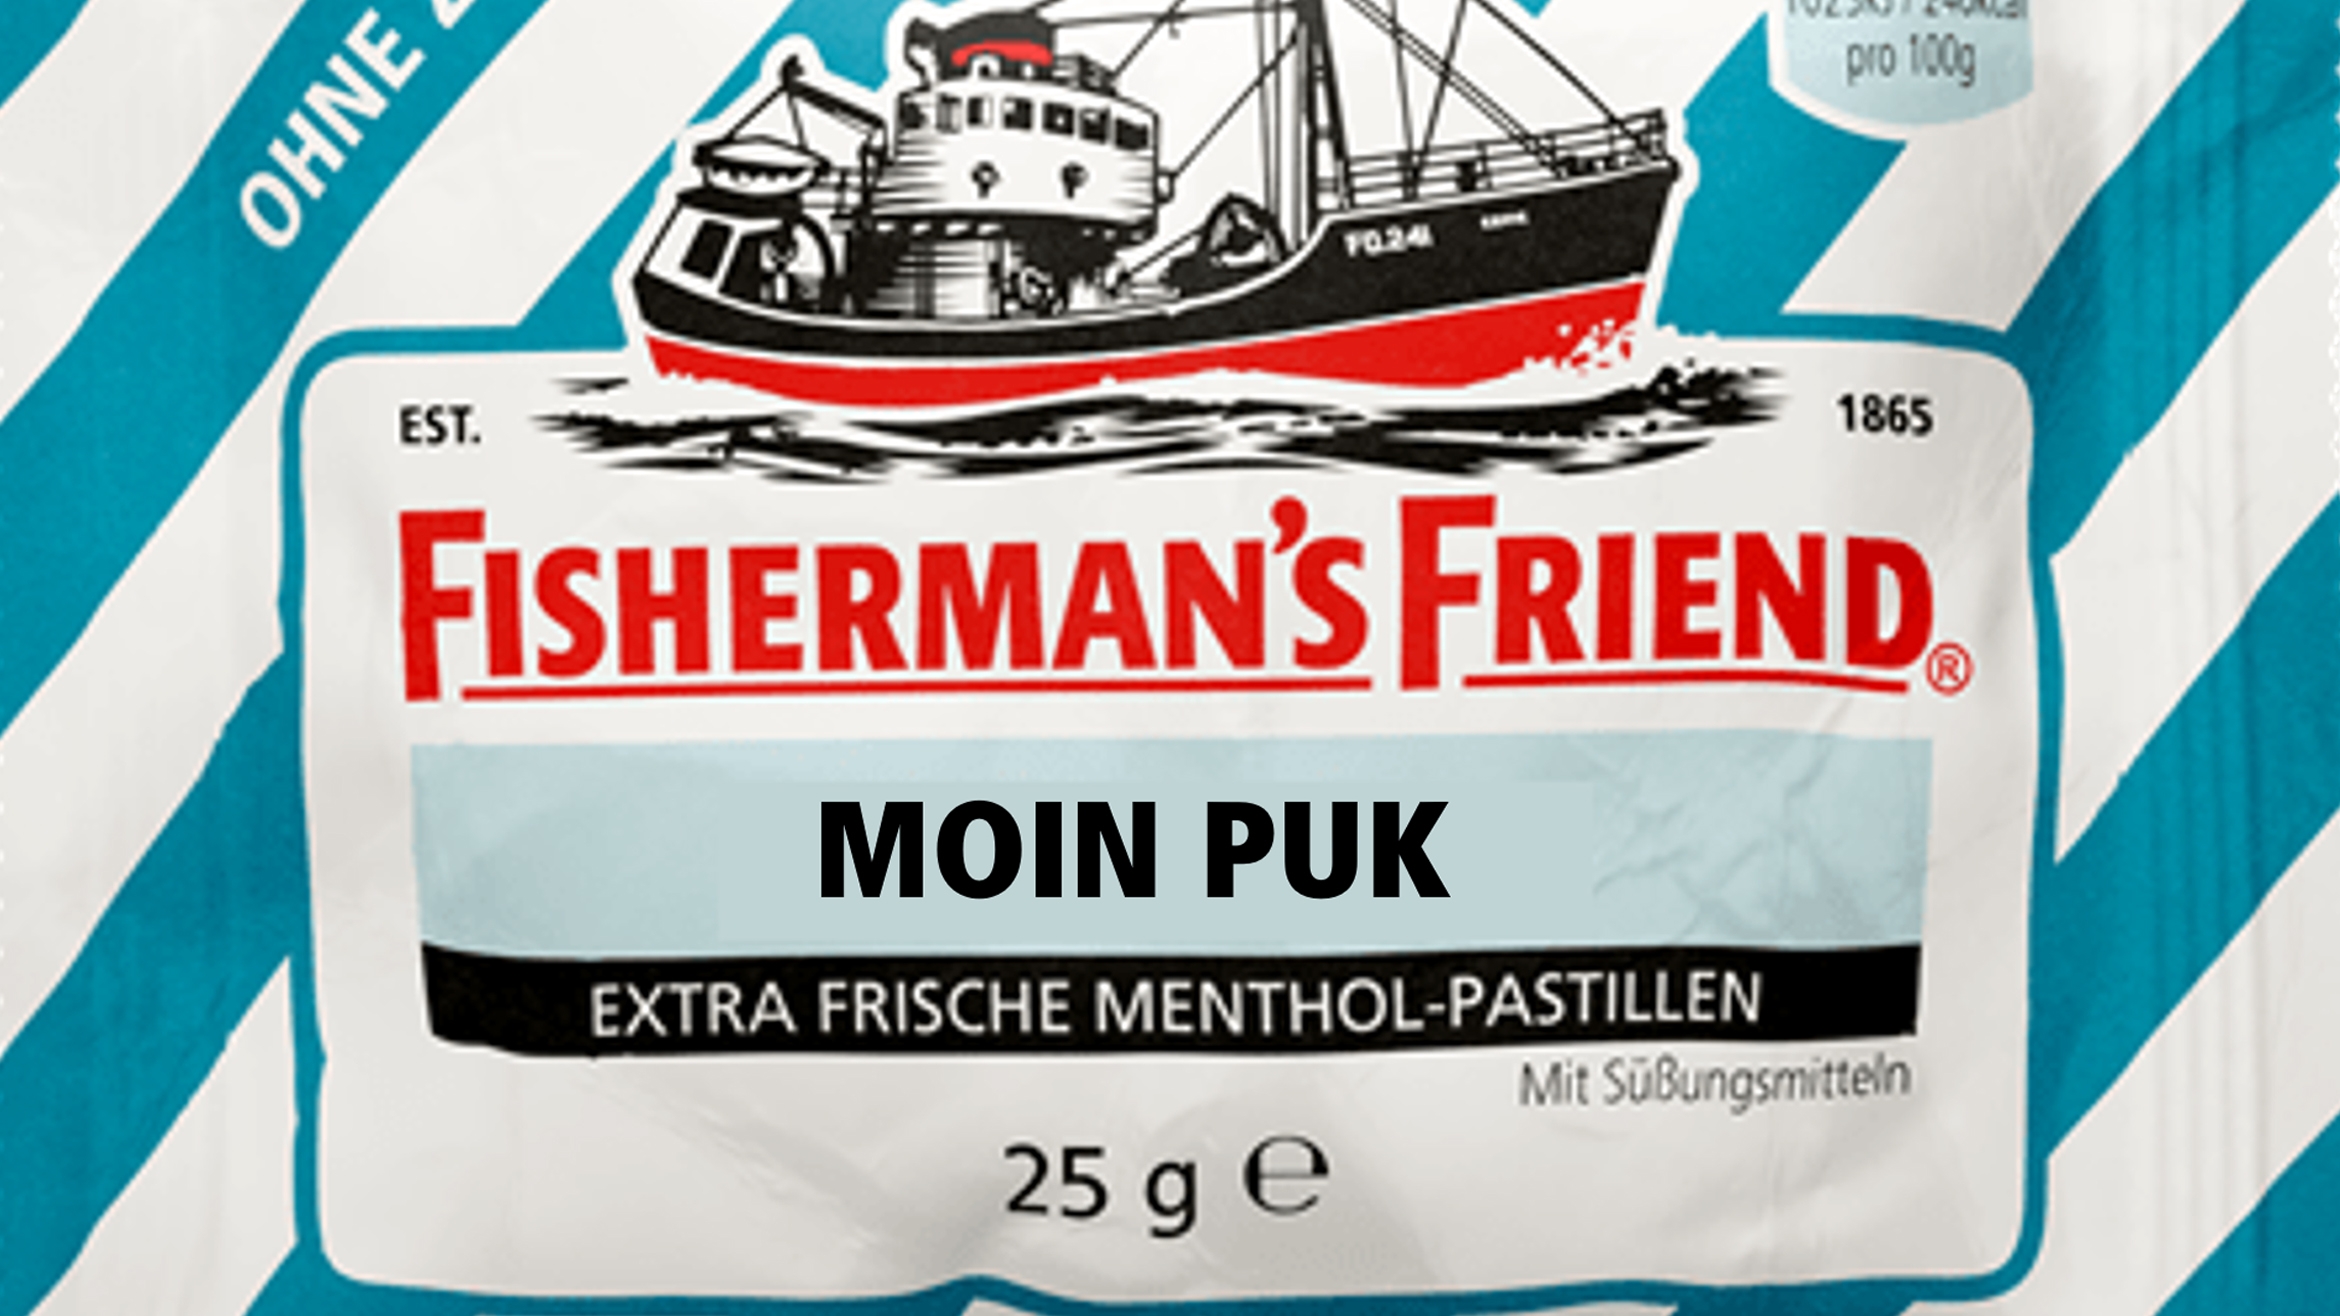 Philipp und Keuntje arbeitet jetzt auch für Fisherman's Friend –